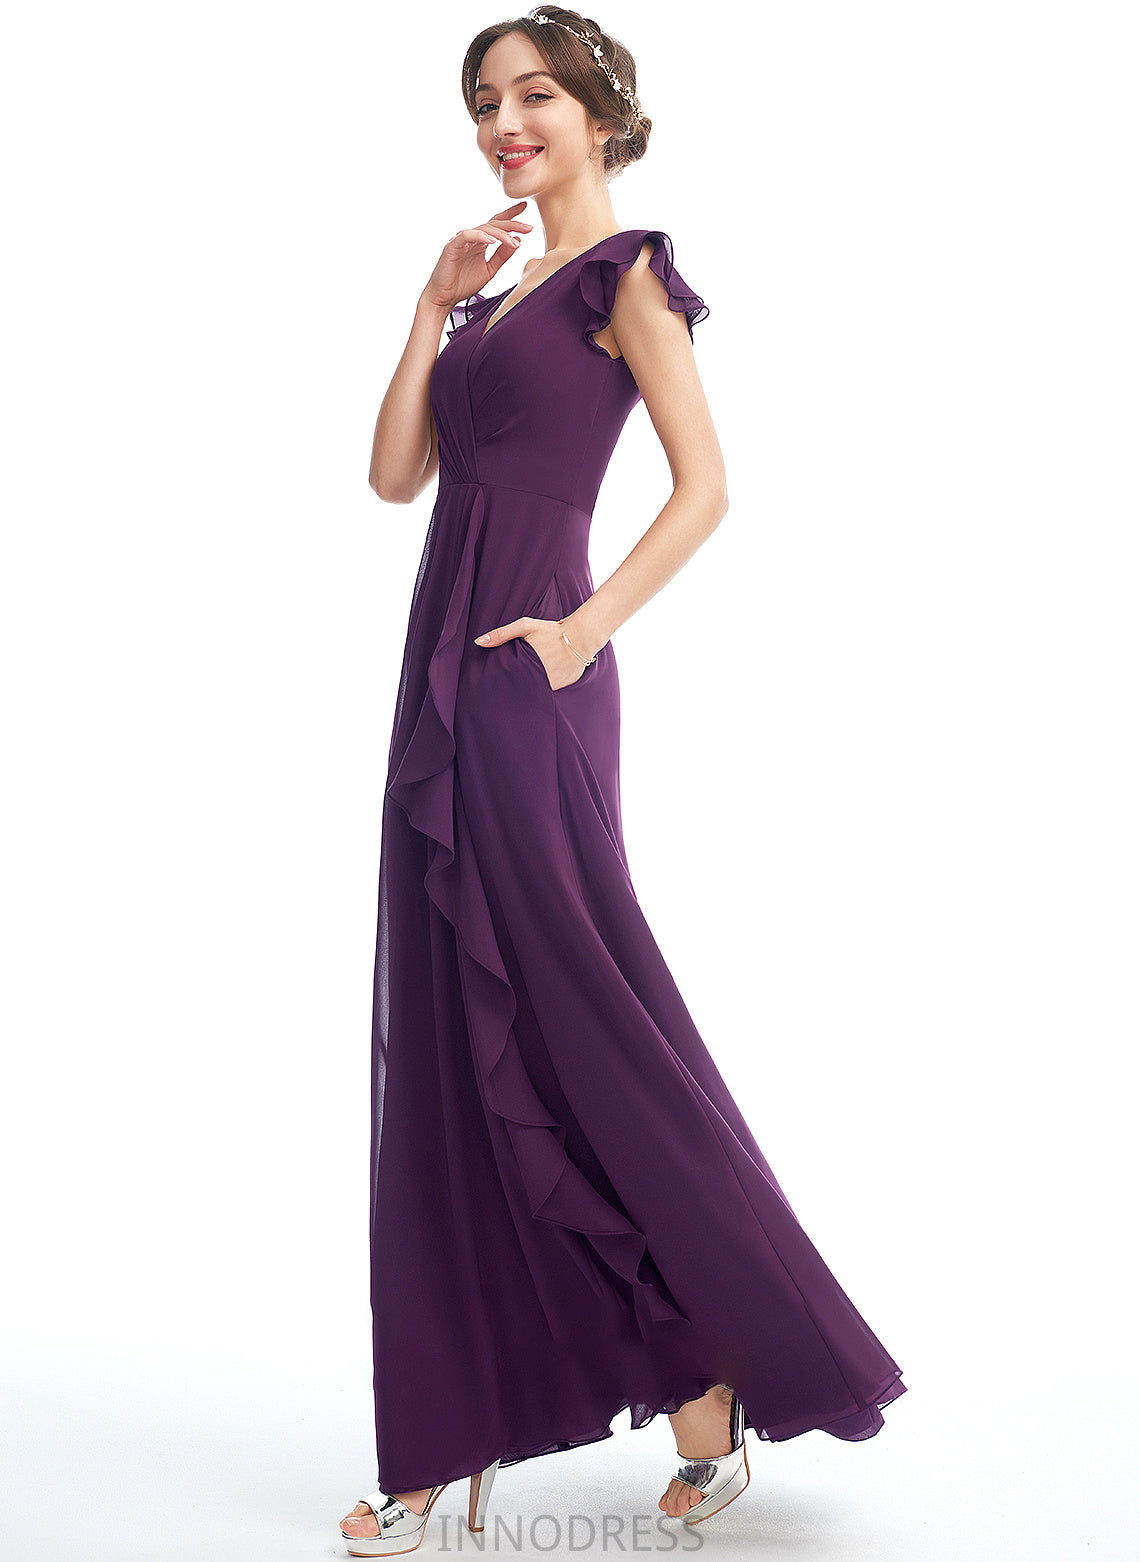 Fabric Embellishment Floor-Length V-neck Length Ruffle A-Line Neckline Silhouette Pockets Esperanza Natural Waist